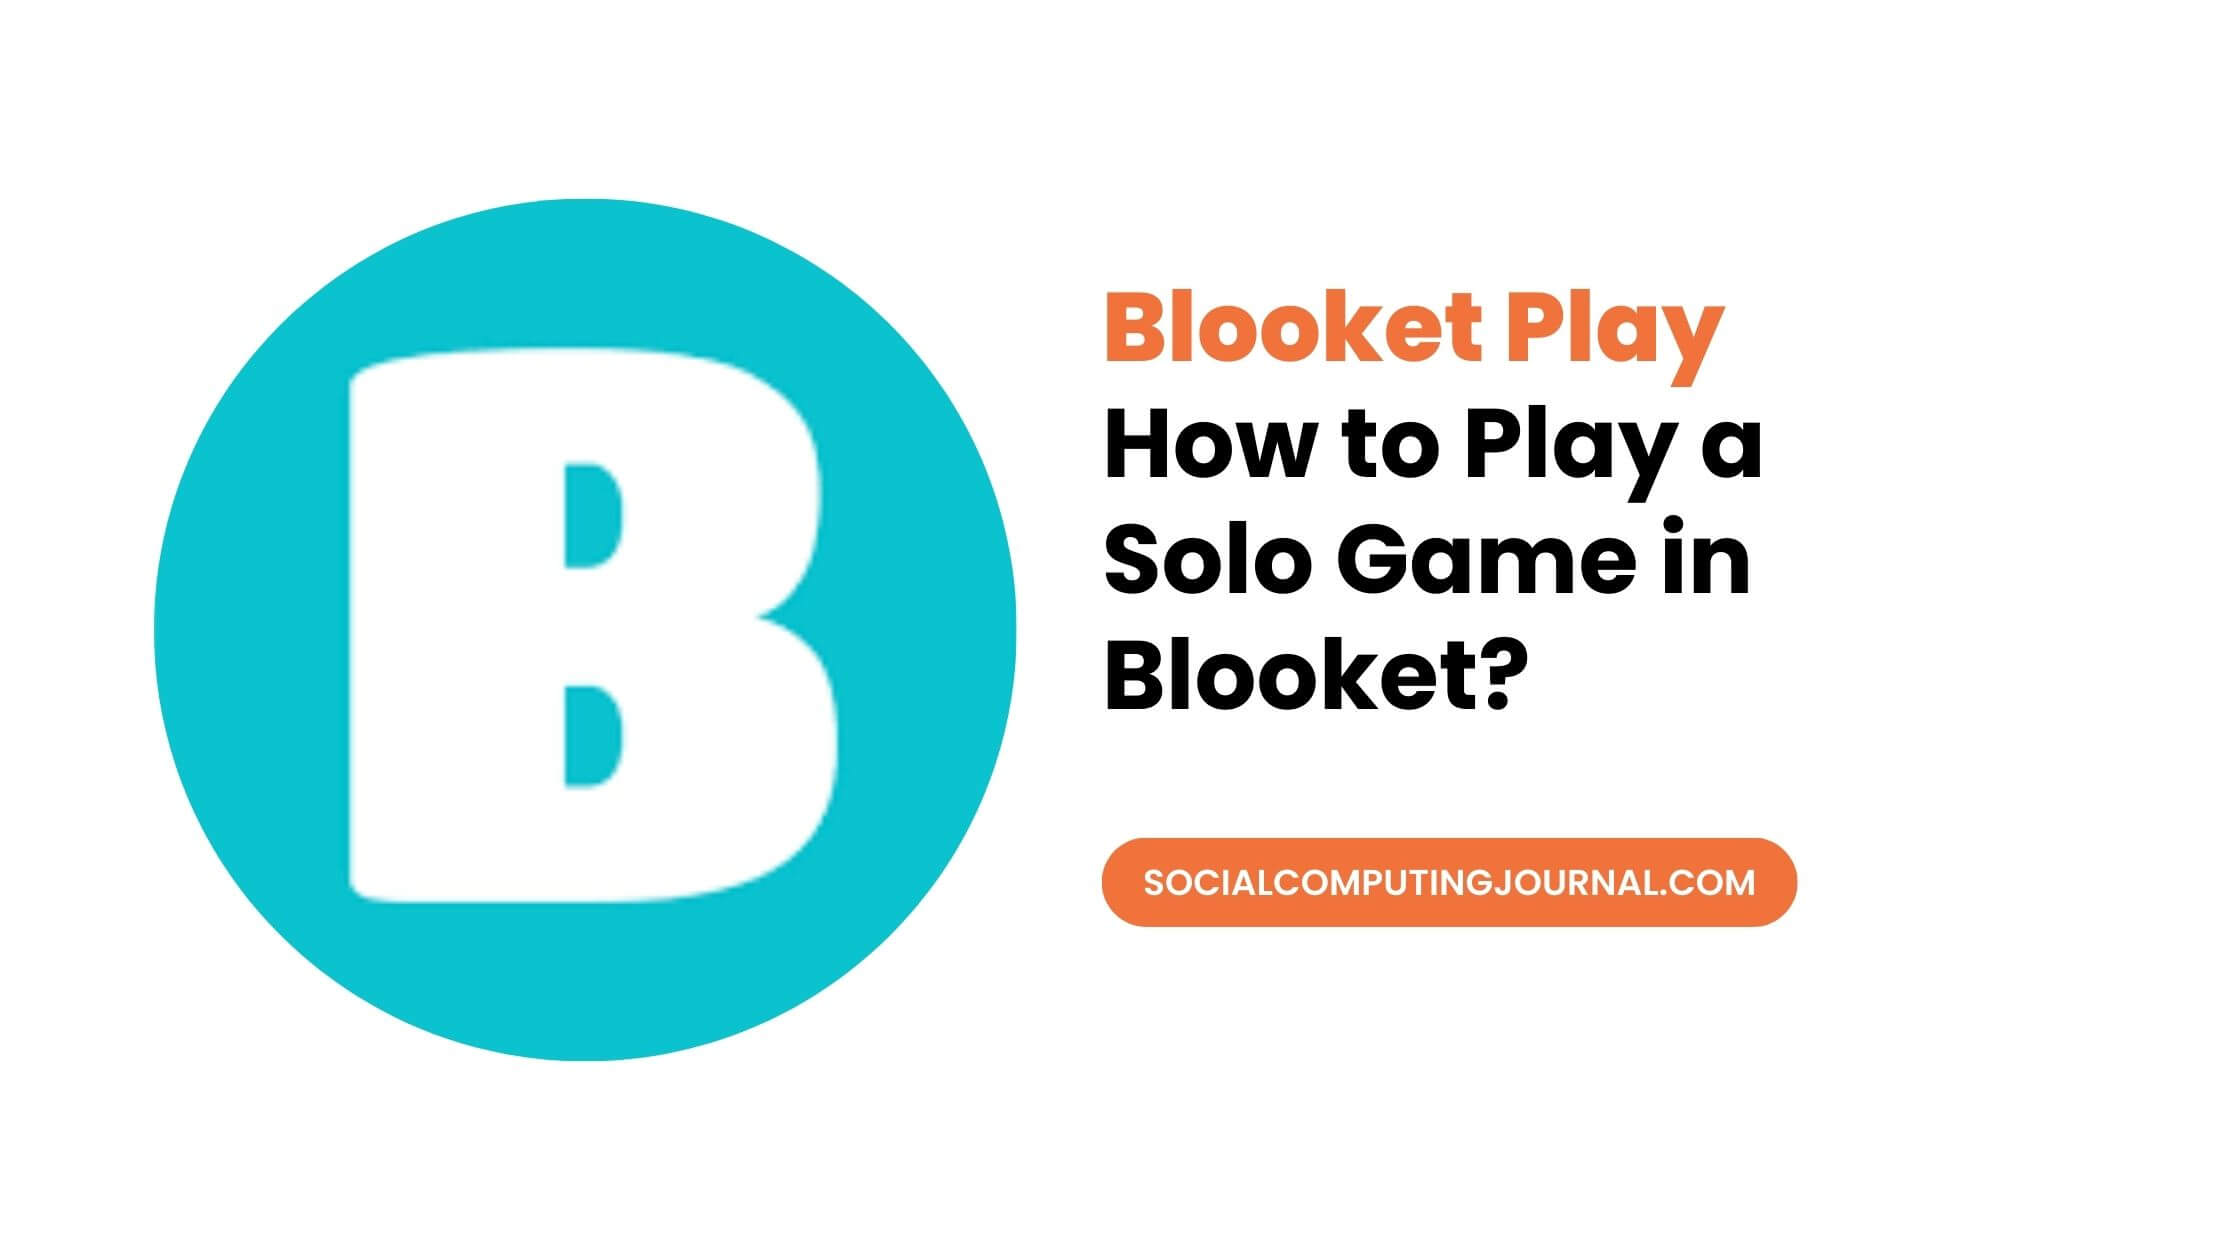 Blooket Play